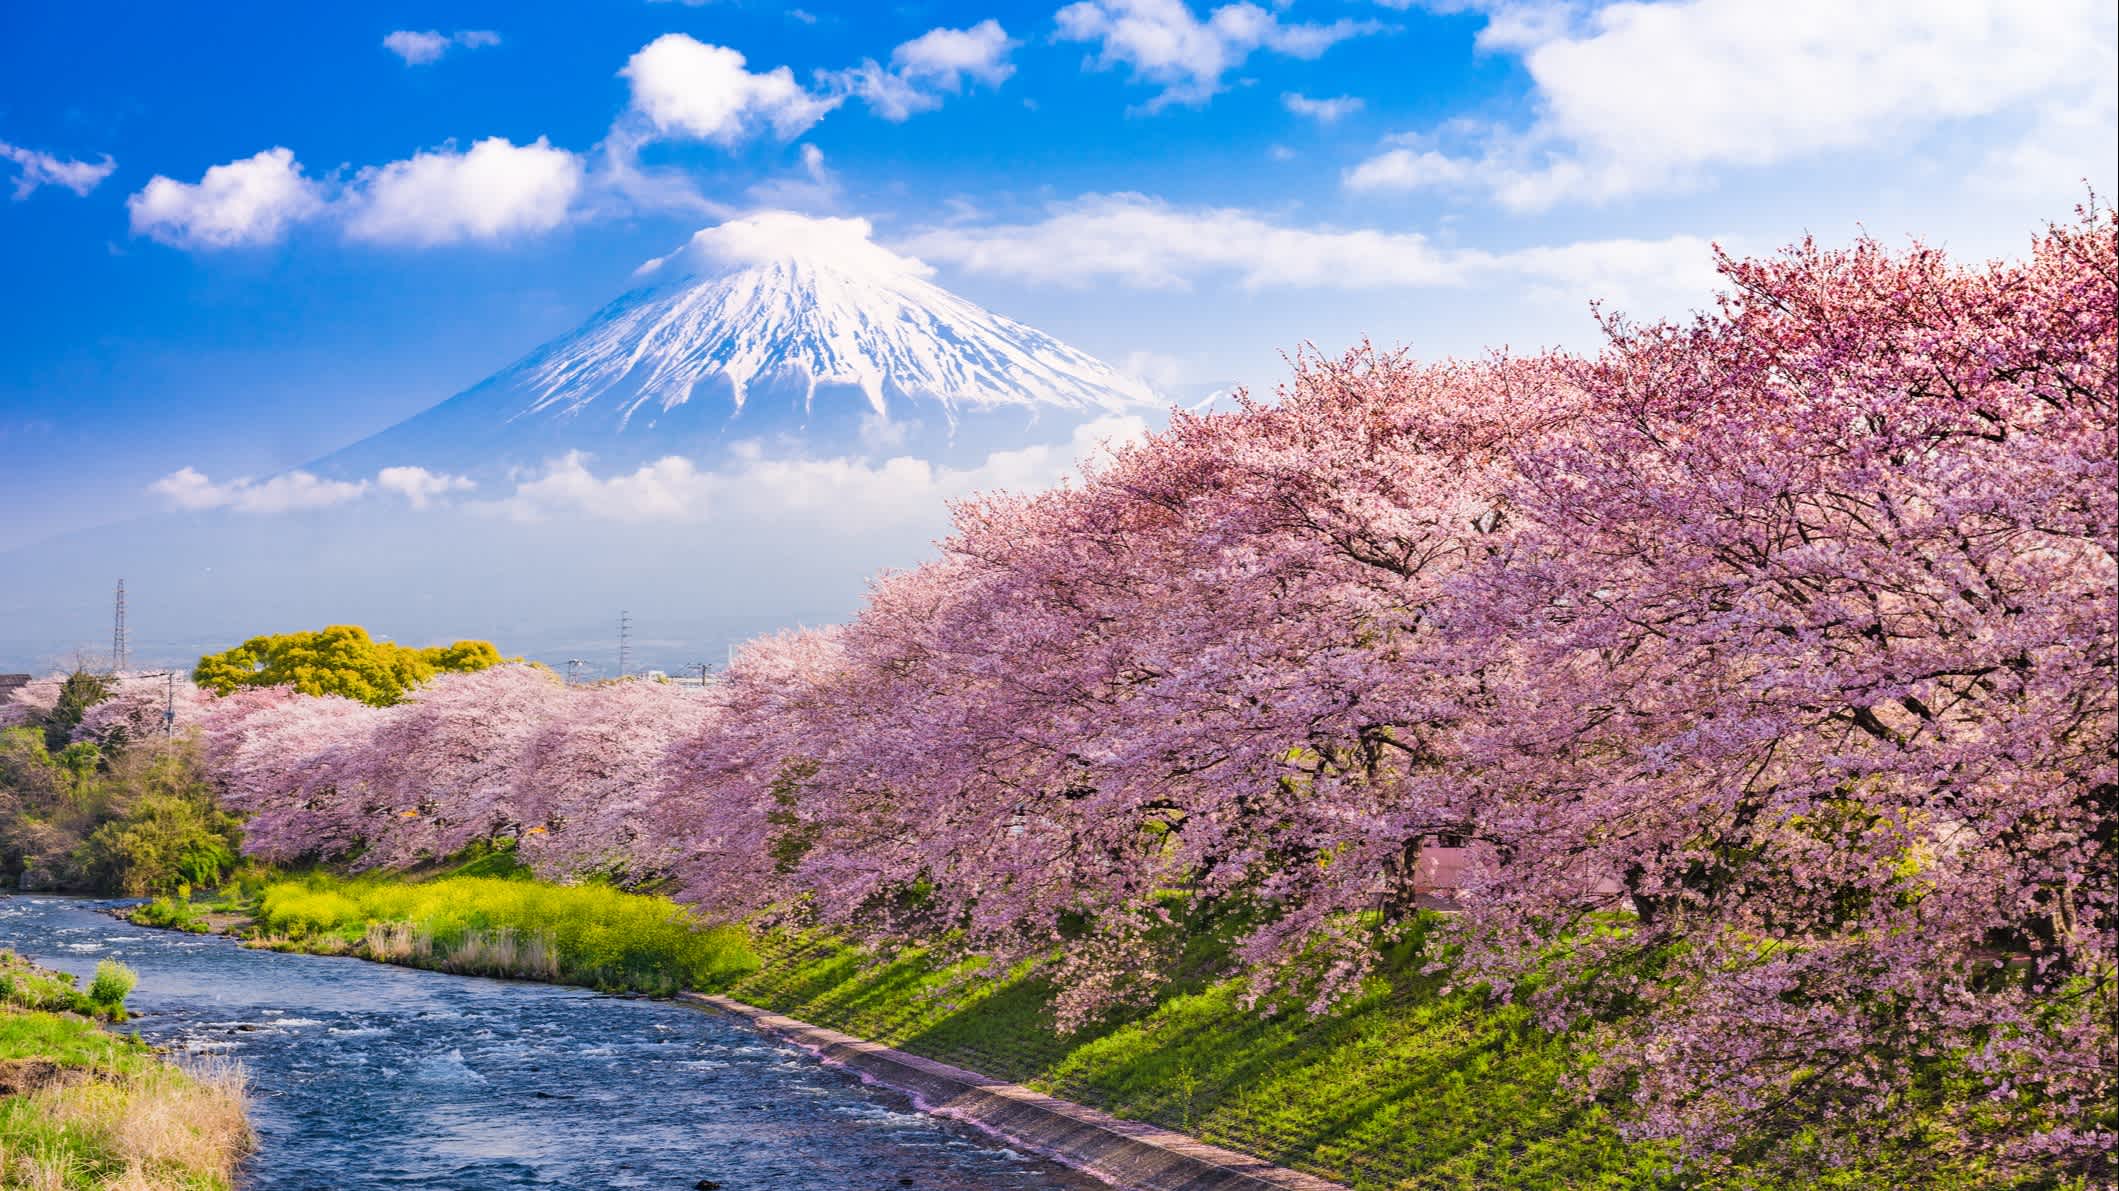 Vue sur le Mont Fuji en arrière plan d'une rivière au printemps au Japon.

